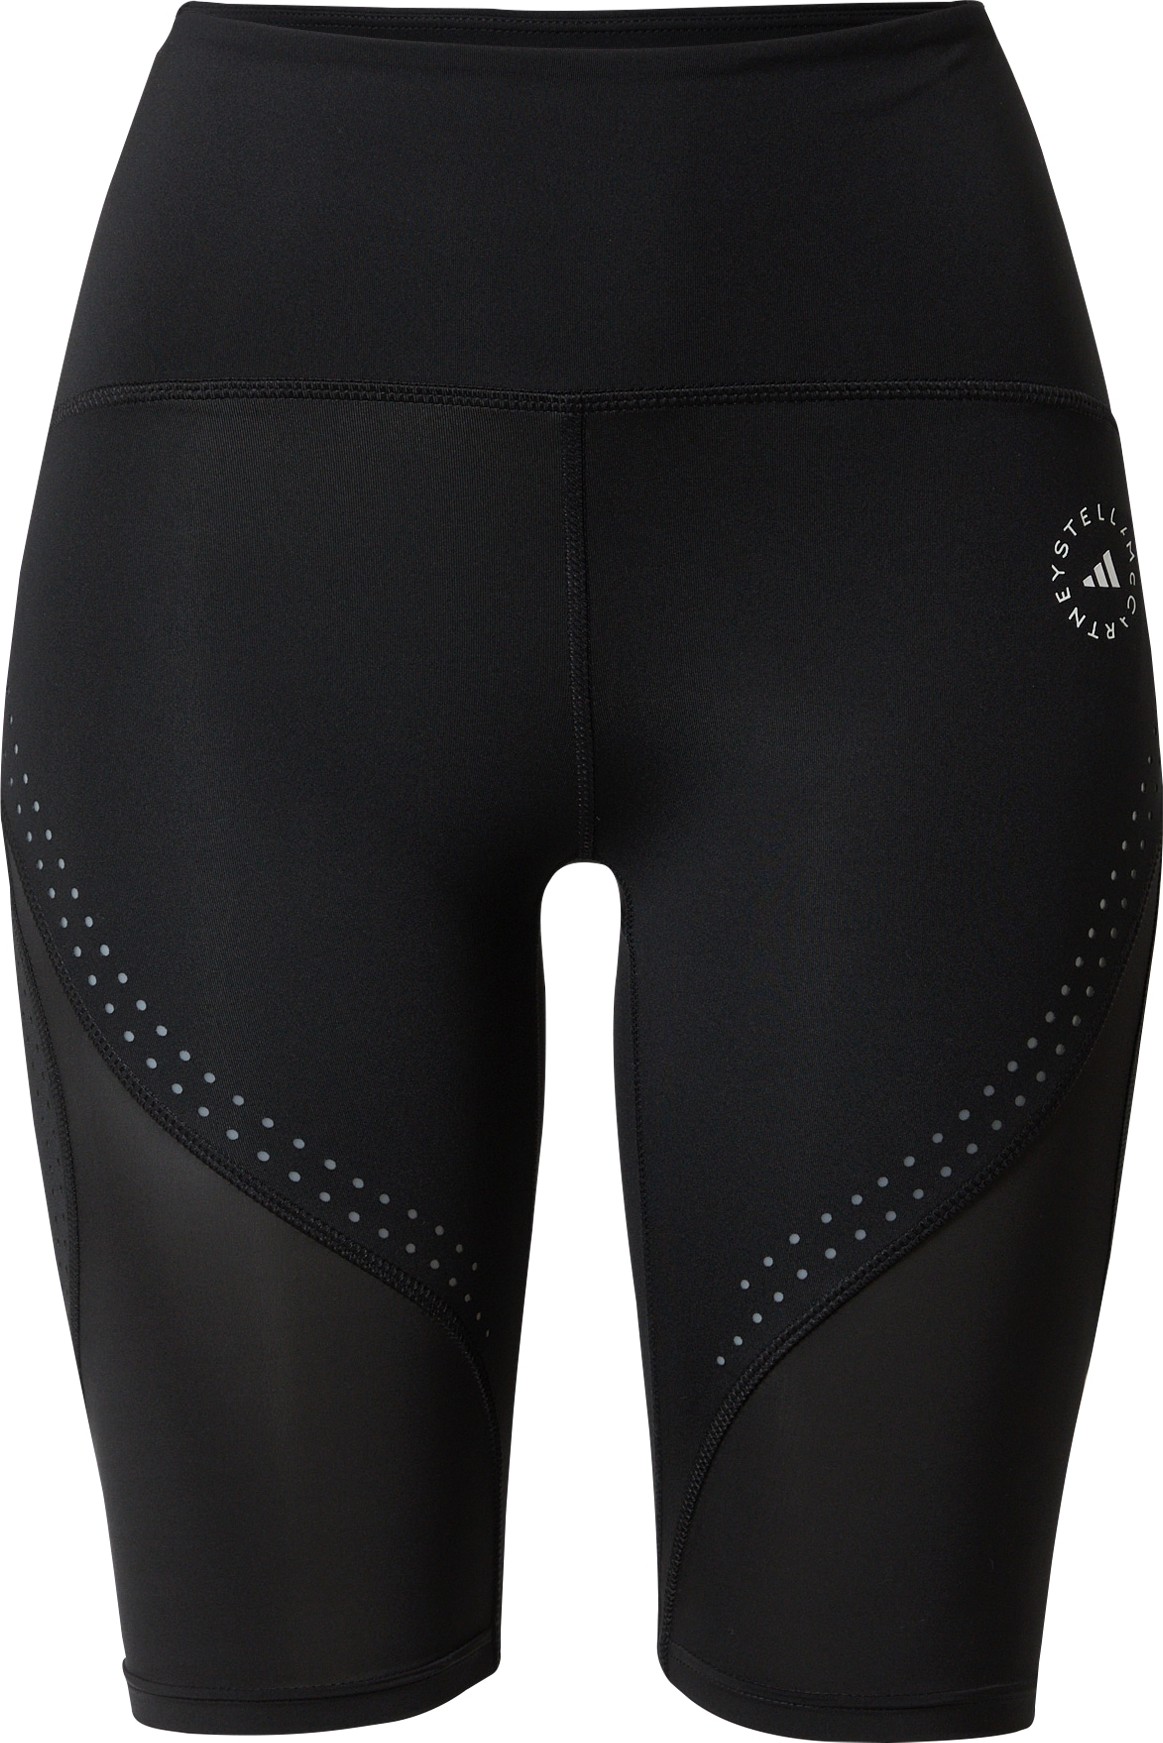 Sportovní kalhoty 'Truepurpose Optime' adidas by stella mccartney černá / bílá